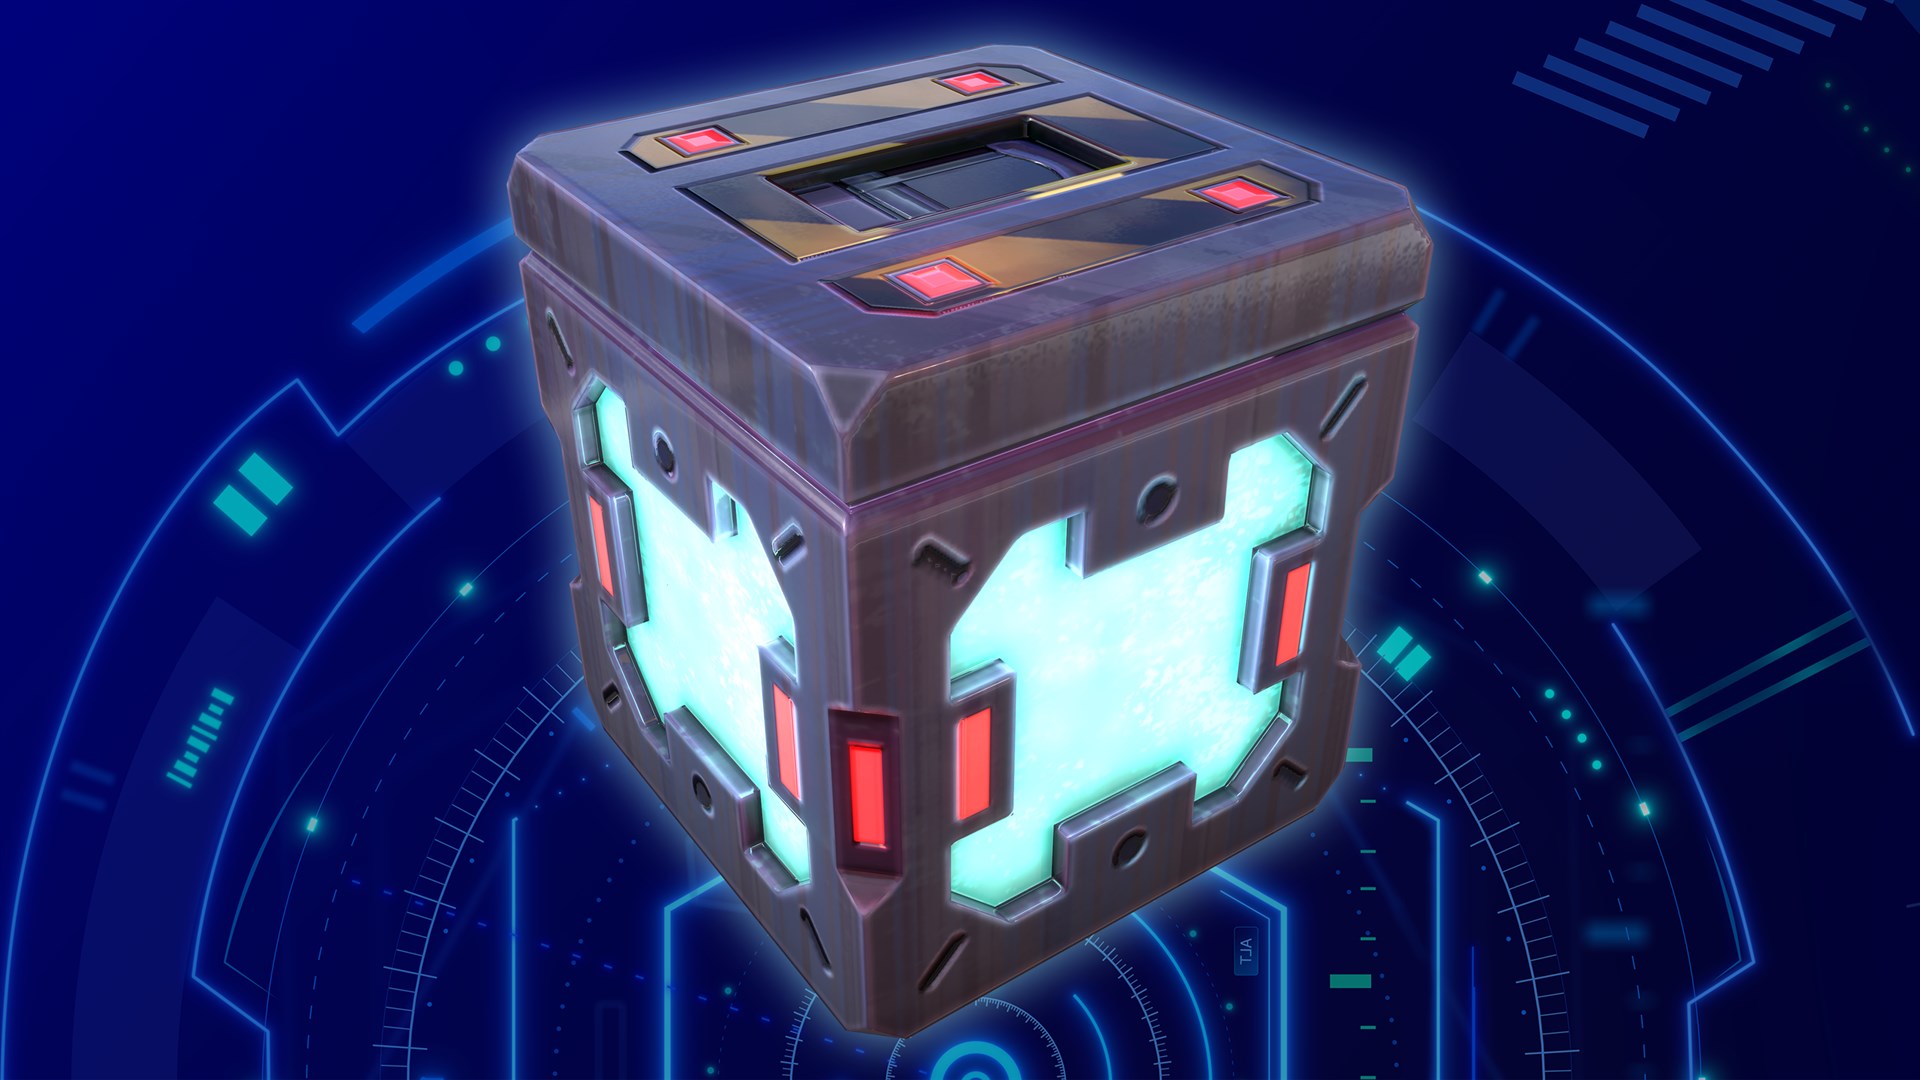 Игры куб 2. Cube (игра). Arcada куб. Кювр код кубик. Offline 2.0 Ocean Cube на ноге.